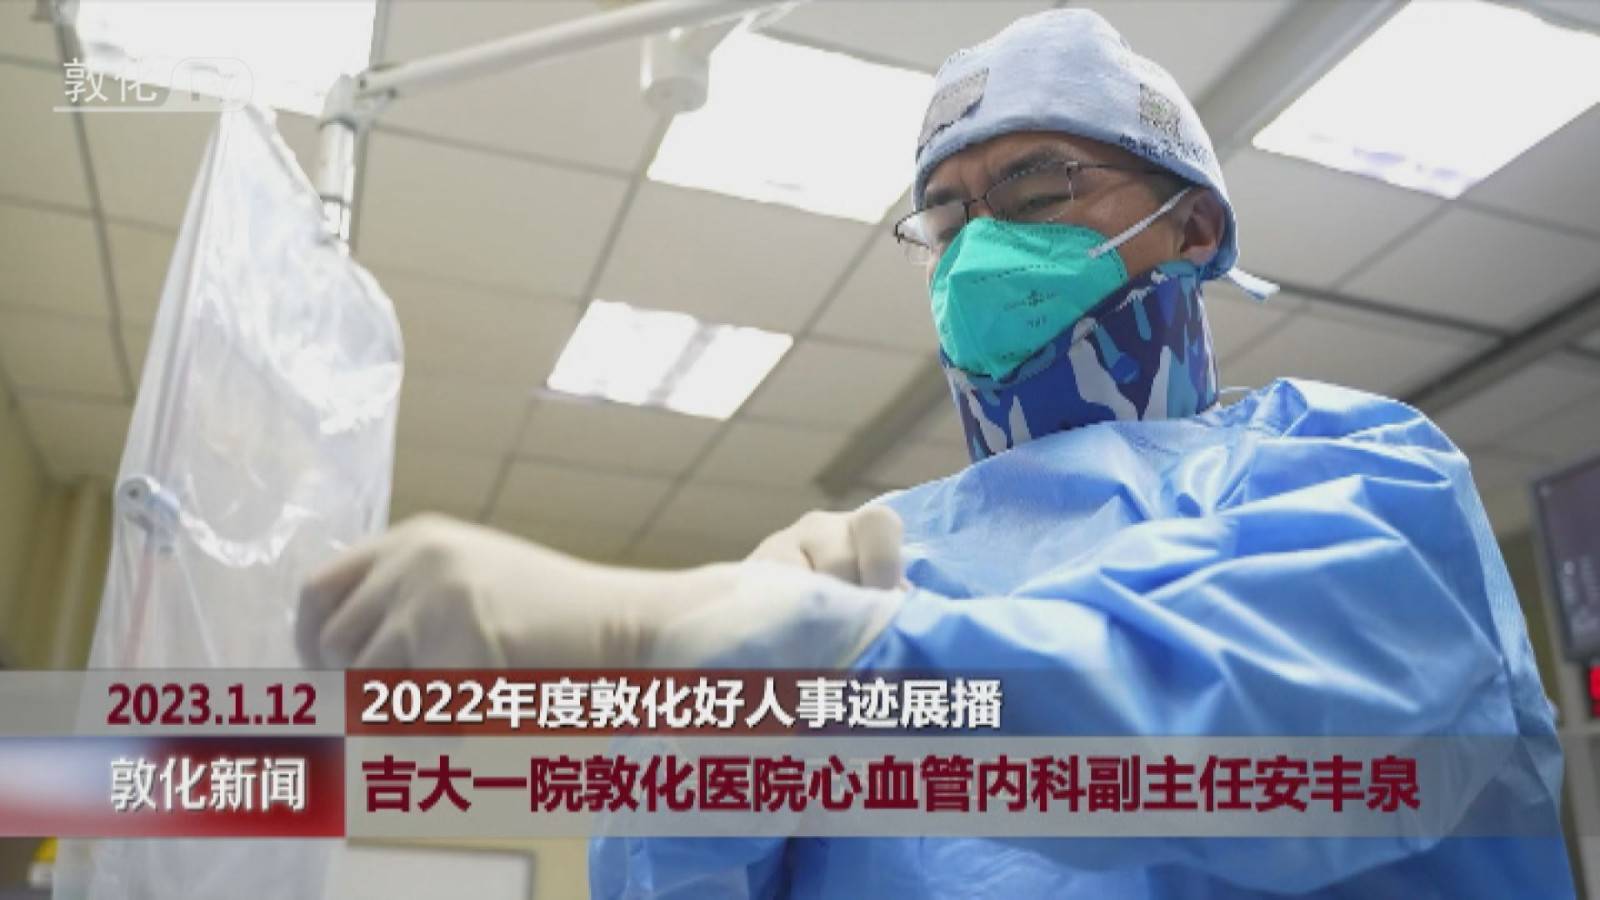 2022年度敦化好人事迹展播 吉大一院敦化医院心血管内科副主任安丰泉